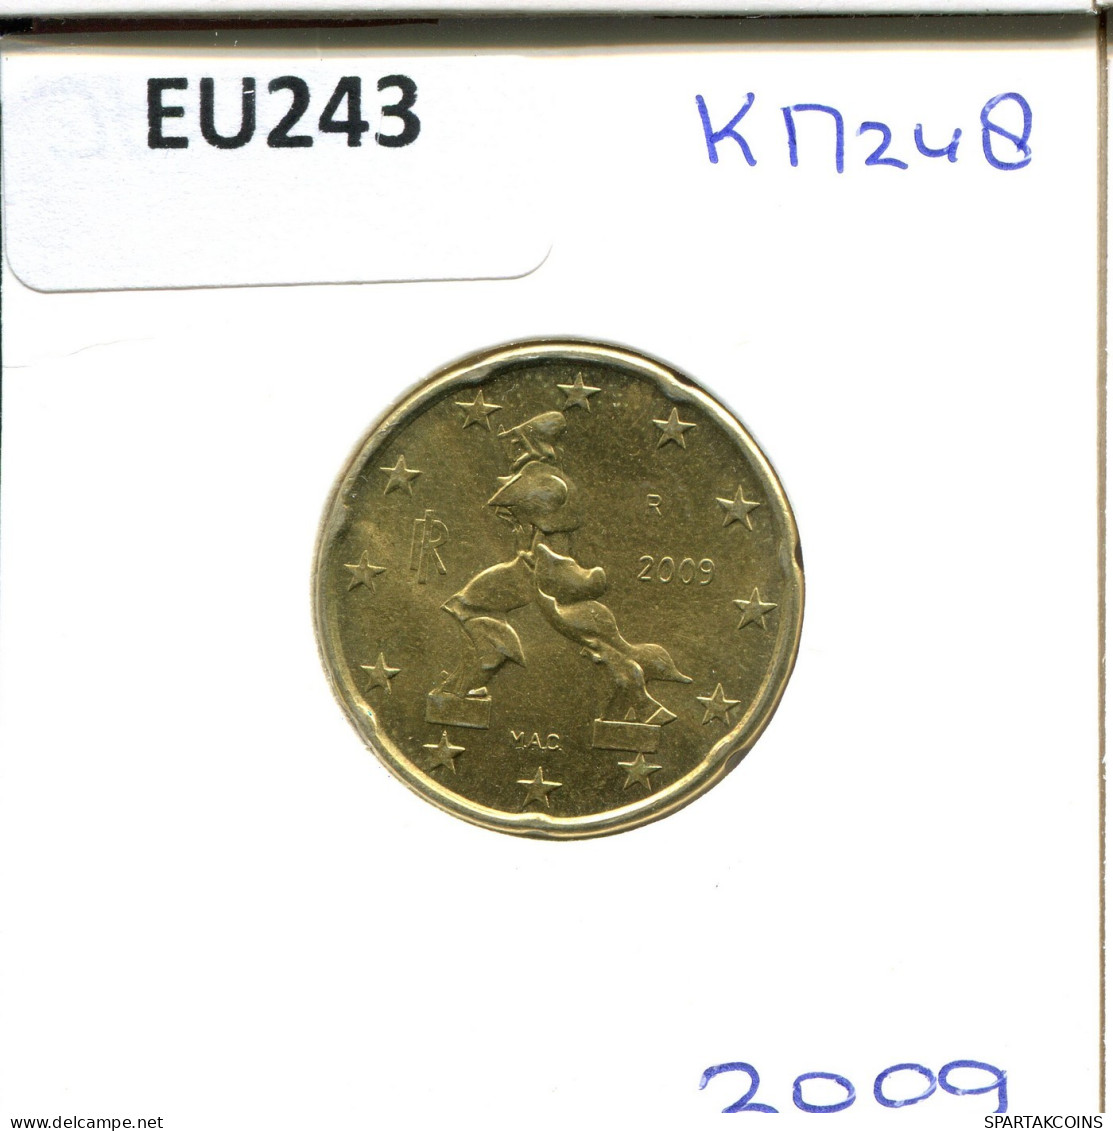 20 EURO CENTS 2009 ITALY Coin #EU243.U.A - Italy